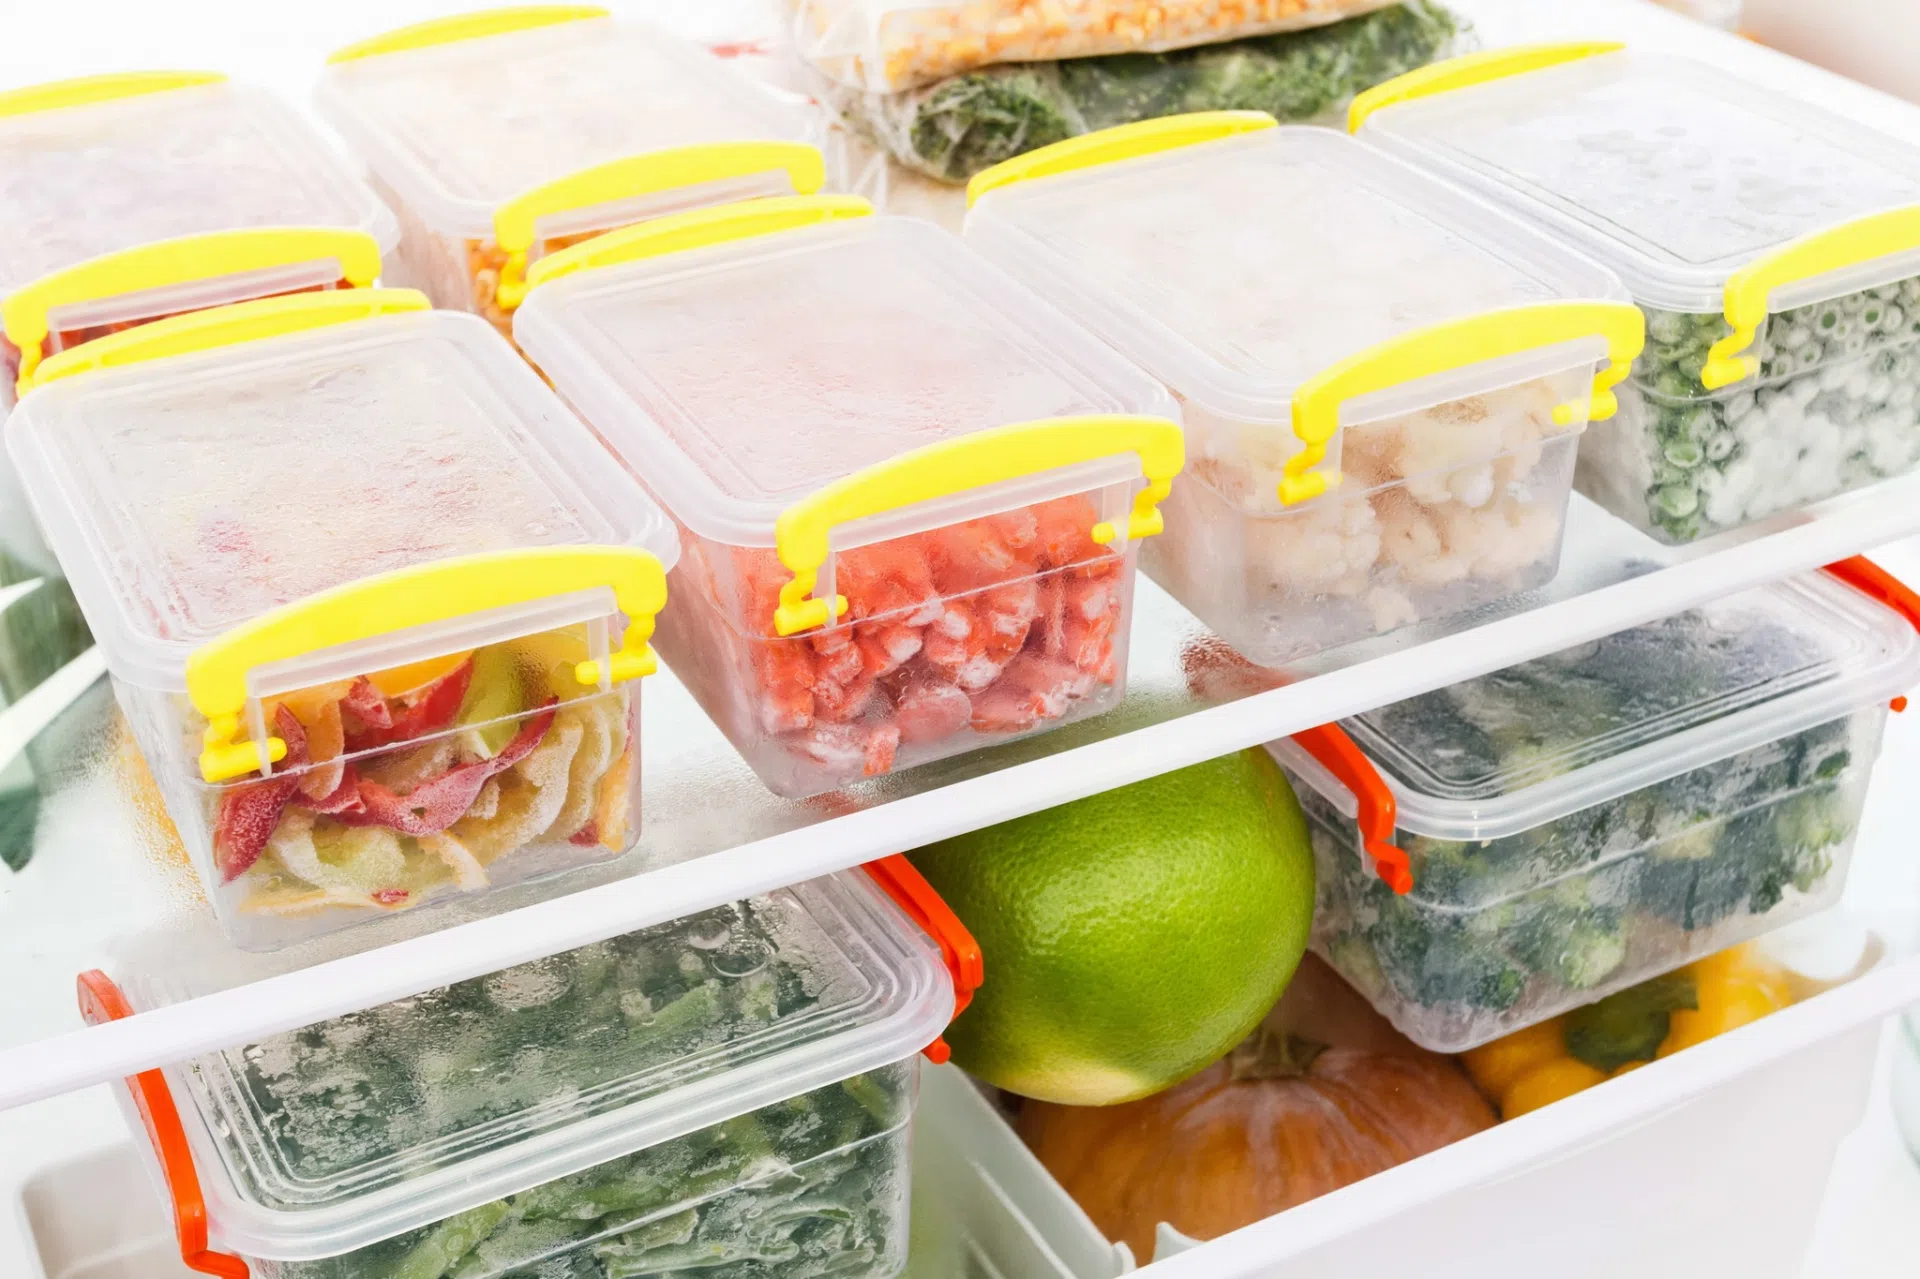 Để nguội thức ăn mới cất vào tủ lạnh: Thói quen tưởng đúng mà hóa sai lầm